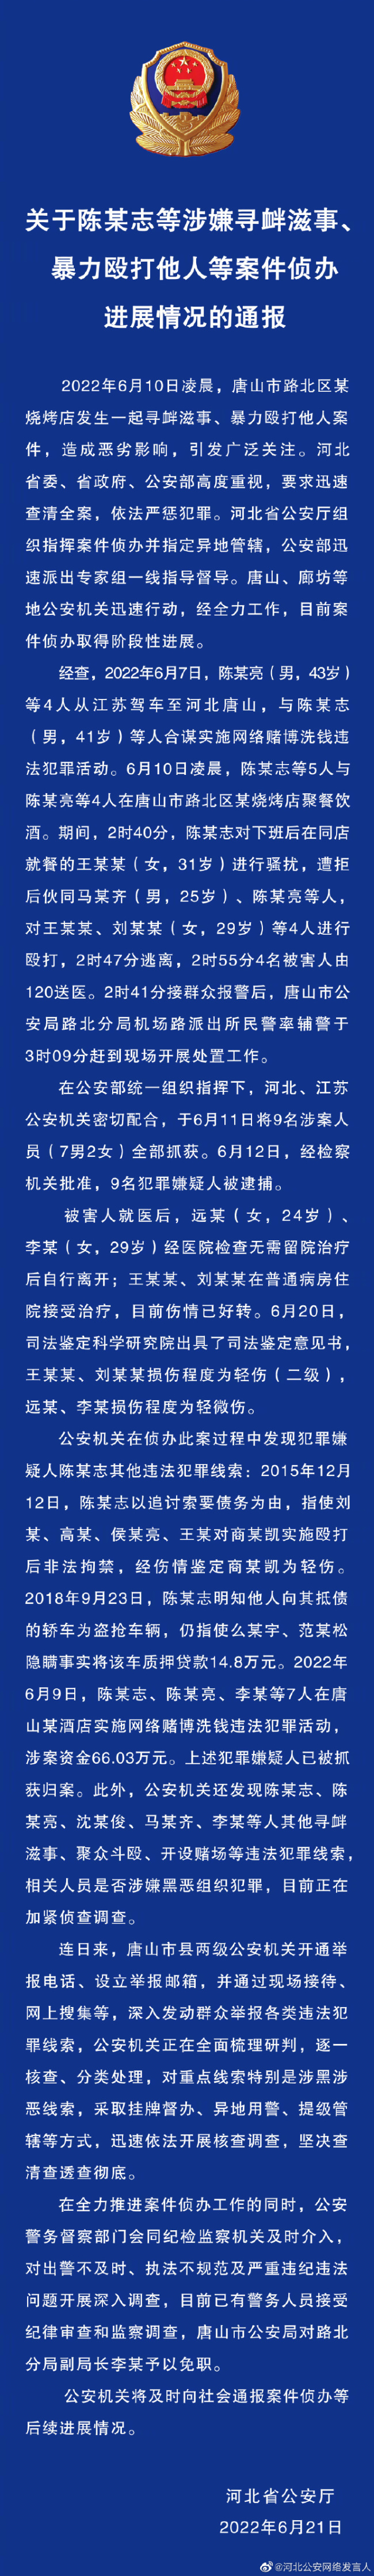 中国纺织品进出口商会发表声明 敦促美方撤销制裁 - MELBet - 百度热点 百度热点快讯